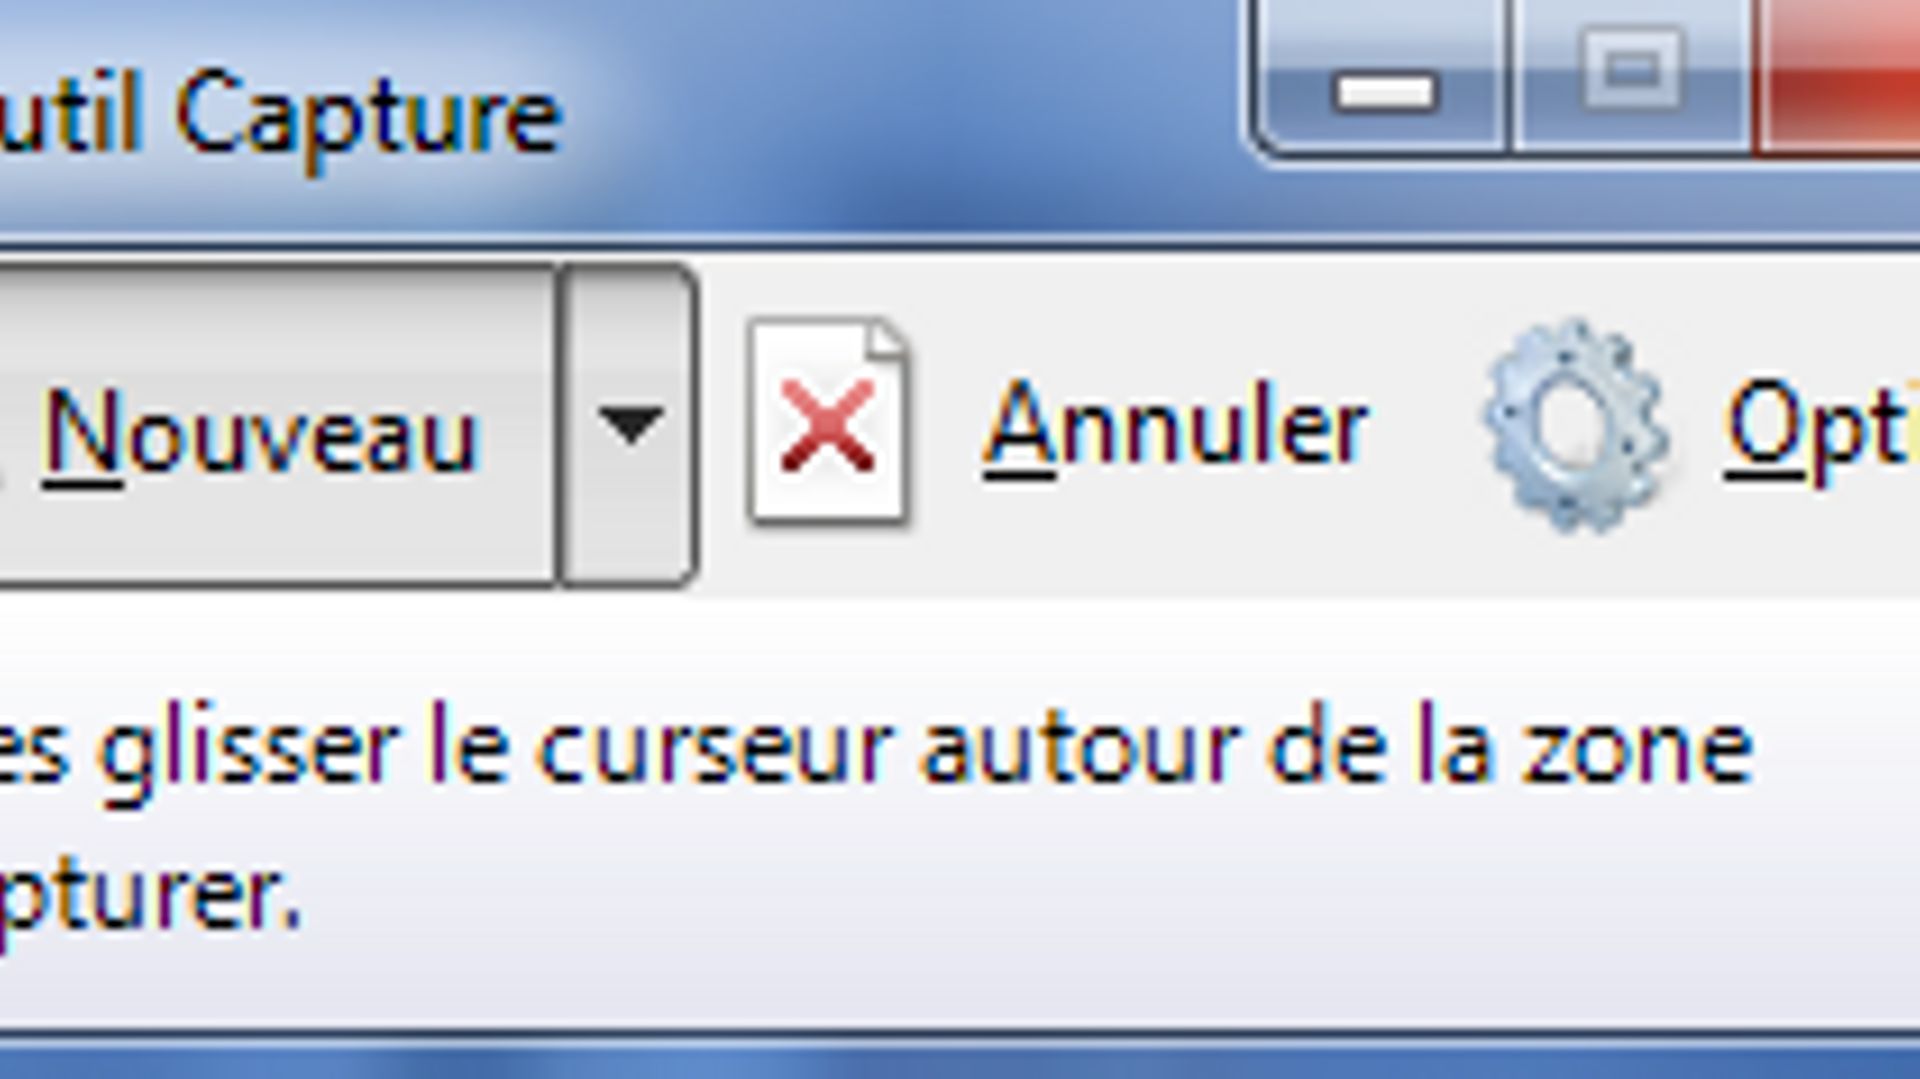 Une capture d'écran de l'outil "Capture d'écran" disponible sur Windows.